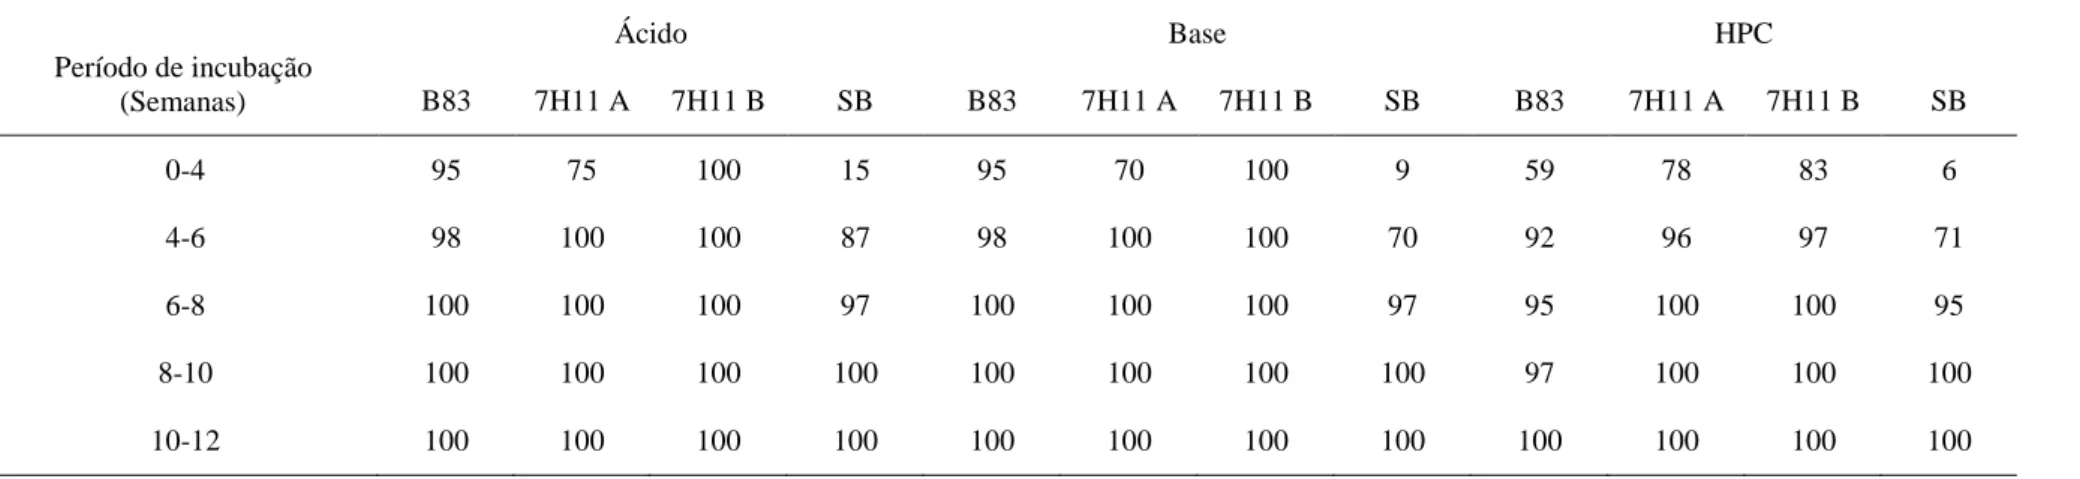 Tabela 12  – Frequência de amostras positivas por período de incubação em relação ao total de amostras positivas ao final da incubação (12  semanas)  nos  meios  de  cultura  ágar  sangue  tuberculose  (B83),  Middlebrook  7H11  com  aditivos  e  suplemento  da  marca  A  (7H11  A),  Middlebrook 7H11 com aditivos e suplemento da marca B (7H11 B) e meio de Stonebrink após descontaminação com H 2 SO 4  5% (ácido), 